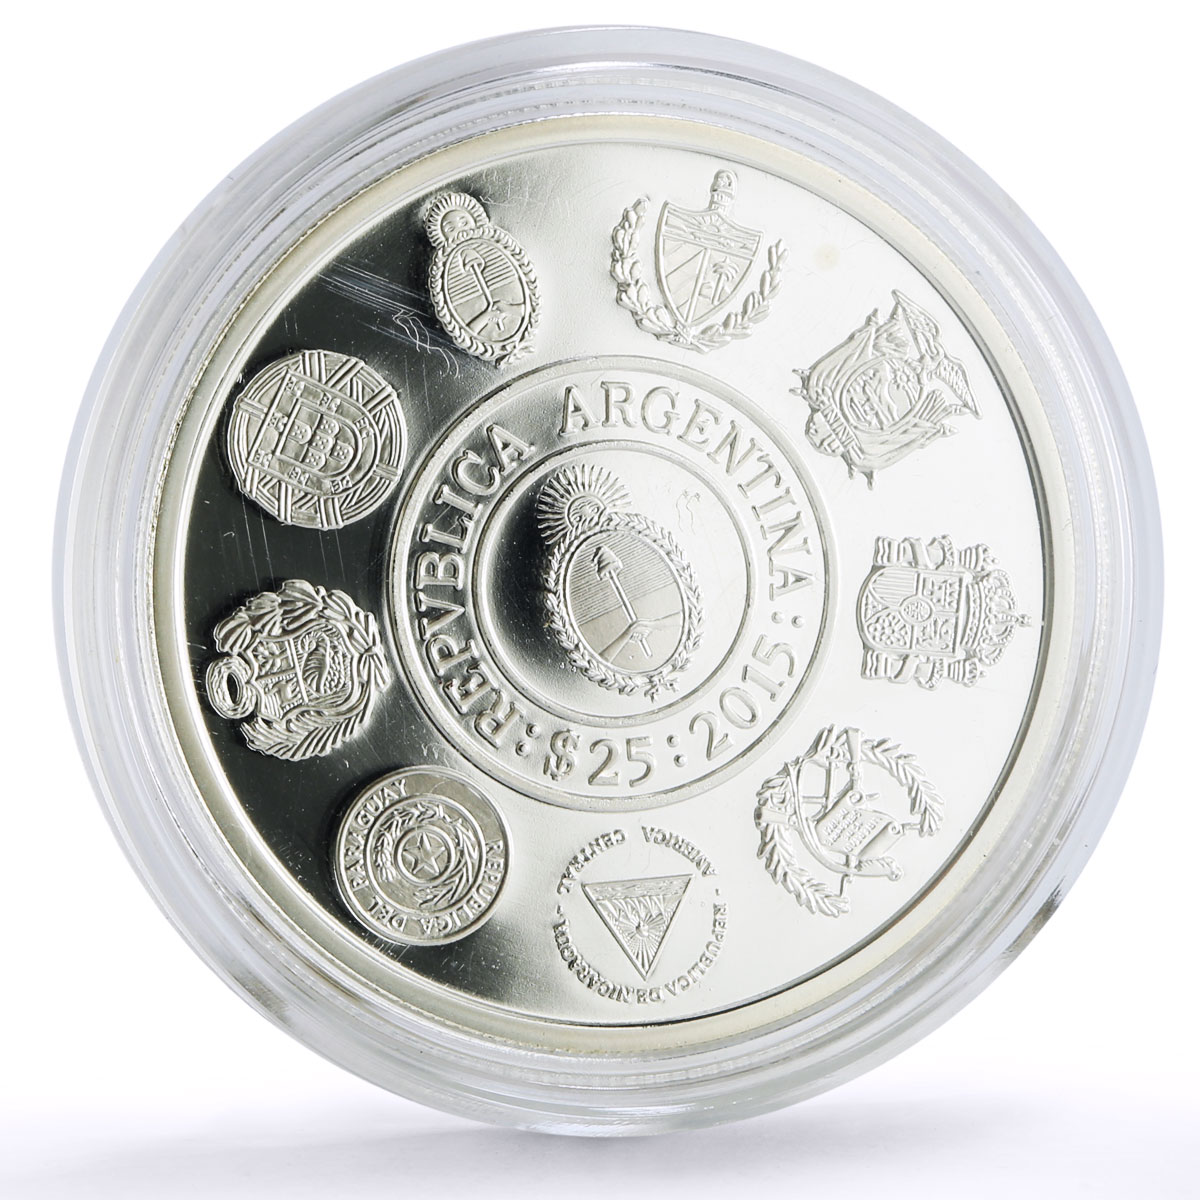 Argentina 25 pesos Ibero-American Cultural Roots Wiphala Emblem silver coin 2015